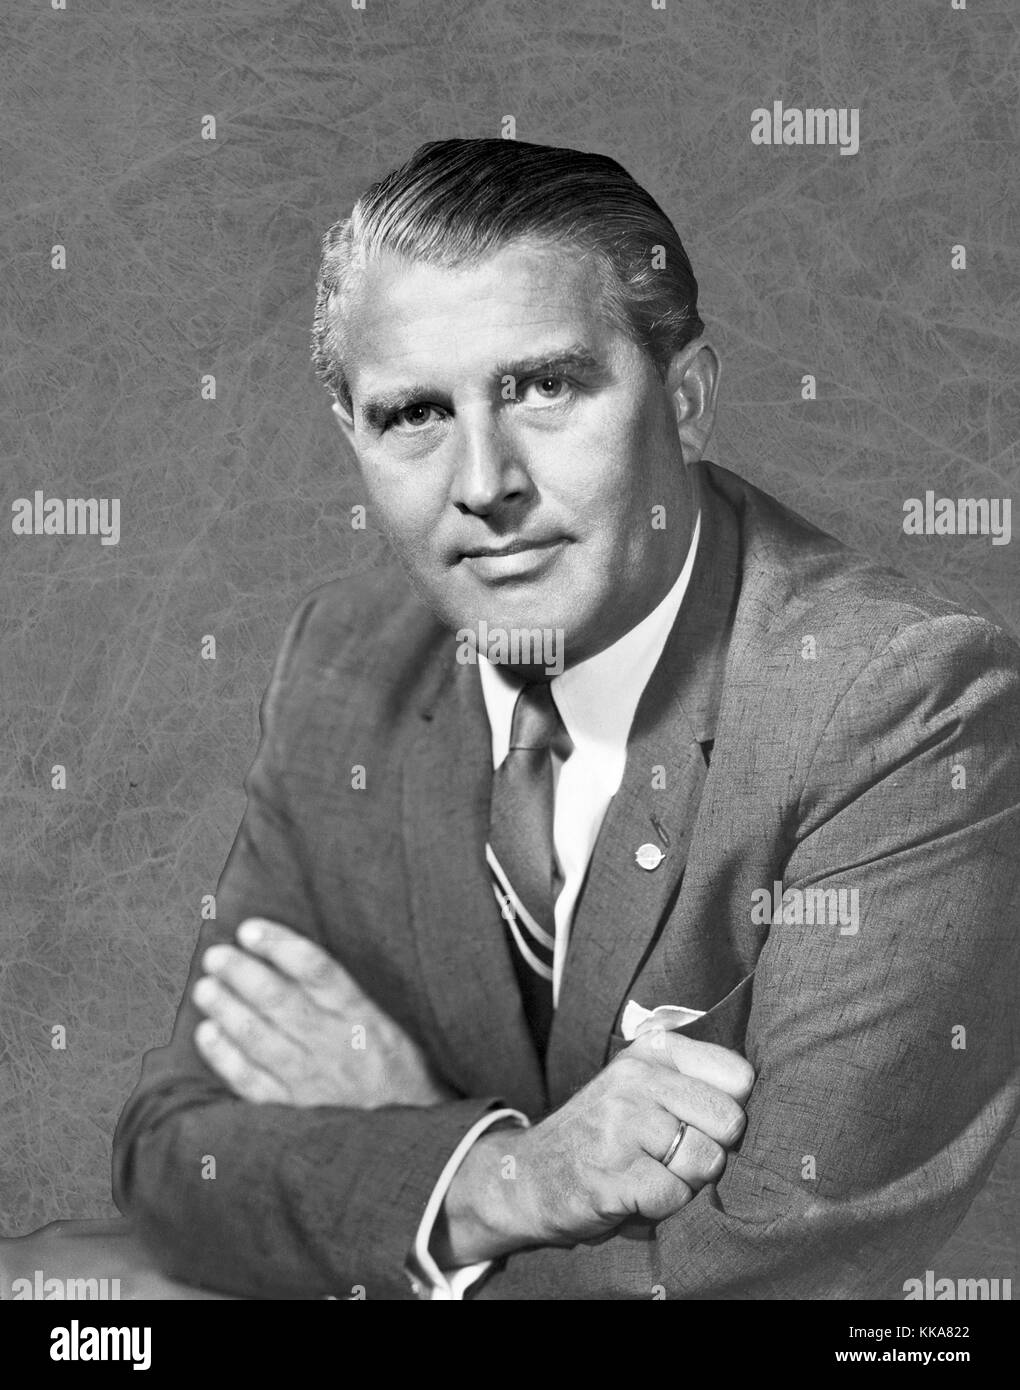 Wernher von Braun, Wernher Magnus Maximilian Freiherr von Braun, Dr. Wernher von Braun, Allemand, plus tard américain, ingénieur aérospatial et architecte spatial crédités pour avoir inventé la fusée V-2 pour l'Allemagne nazie et la Saturne V pour les États-Unis Banque D'Images